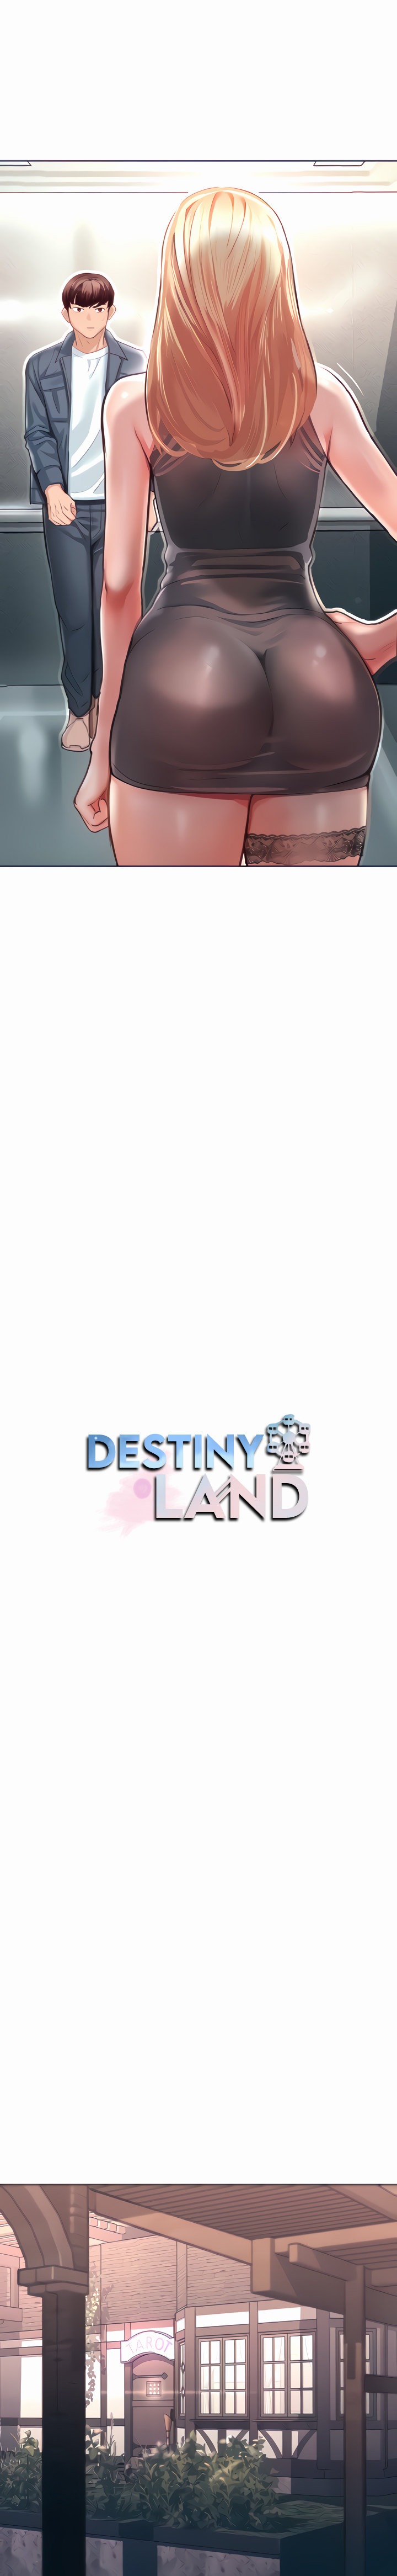 Destiny Land - Chapter 4 Page 7